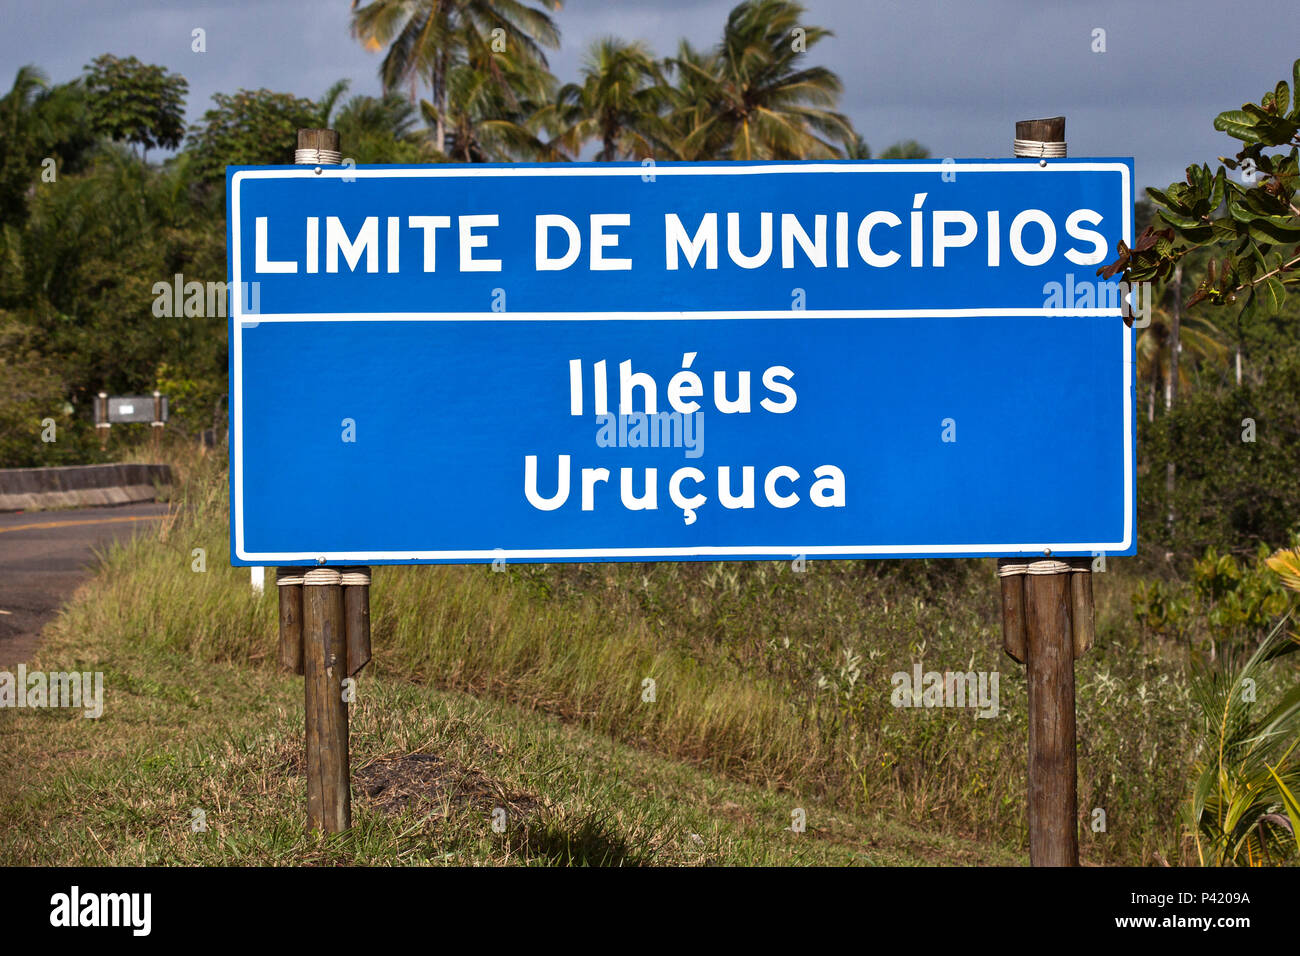 Placa de Limite de Municipios Placa Placa de rodovia Placa azul Placa de Limite de Ilhéus ecom Uruçuca Placa do Estado da Bahia Sul da Bahia Costa do Cacau Bahia Brasil Stock Photo